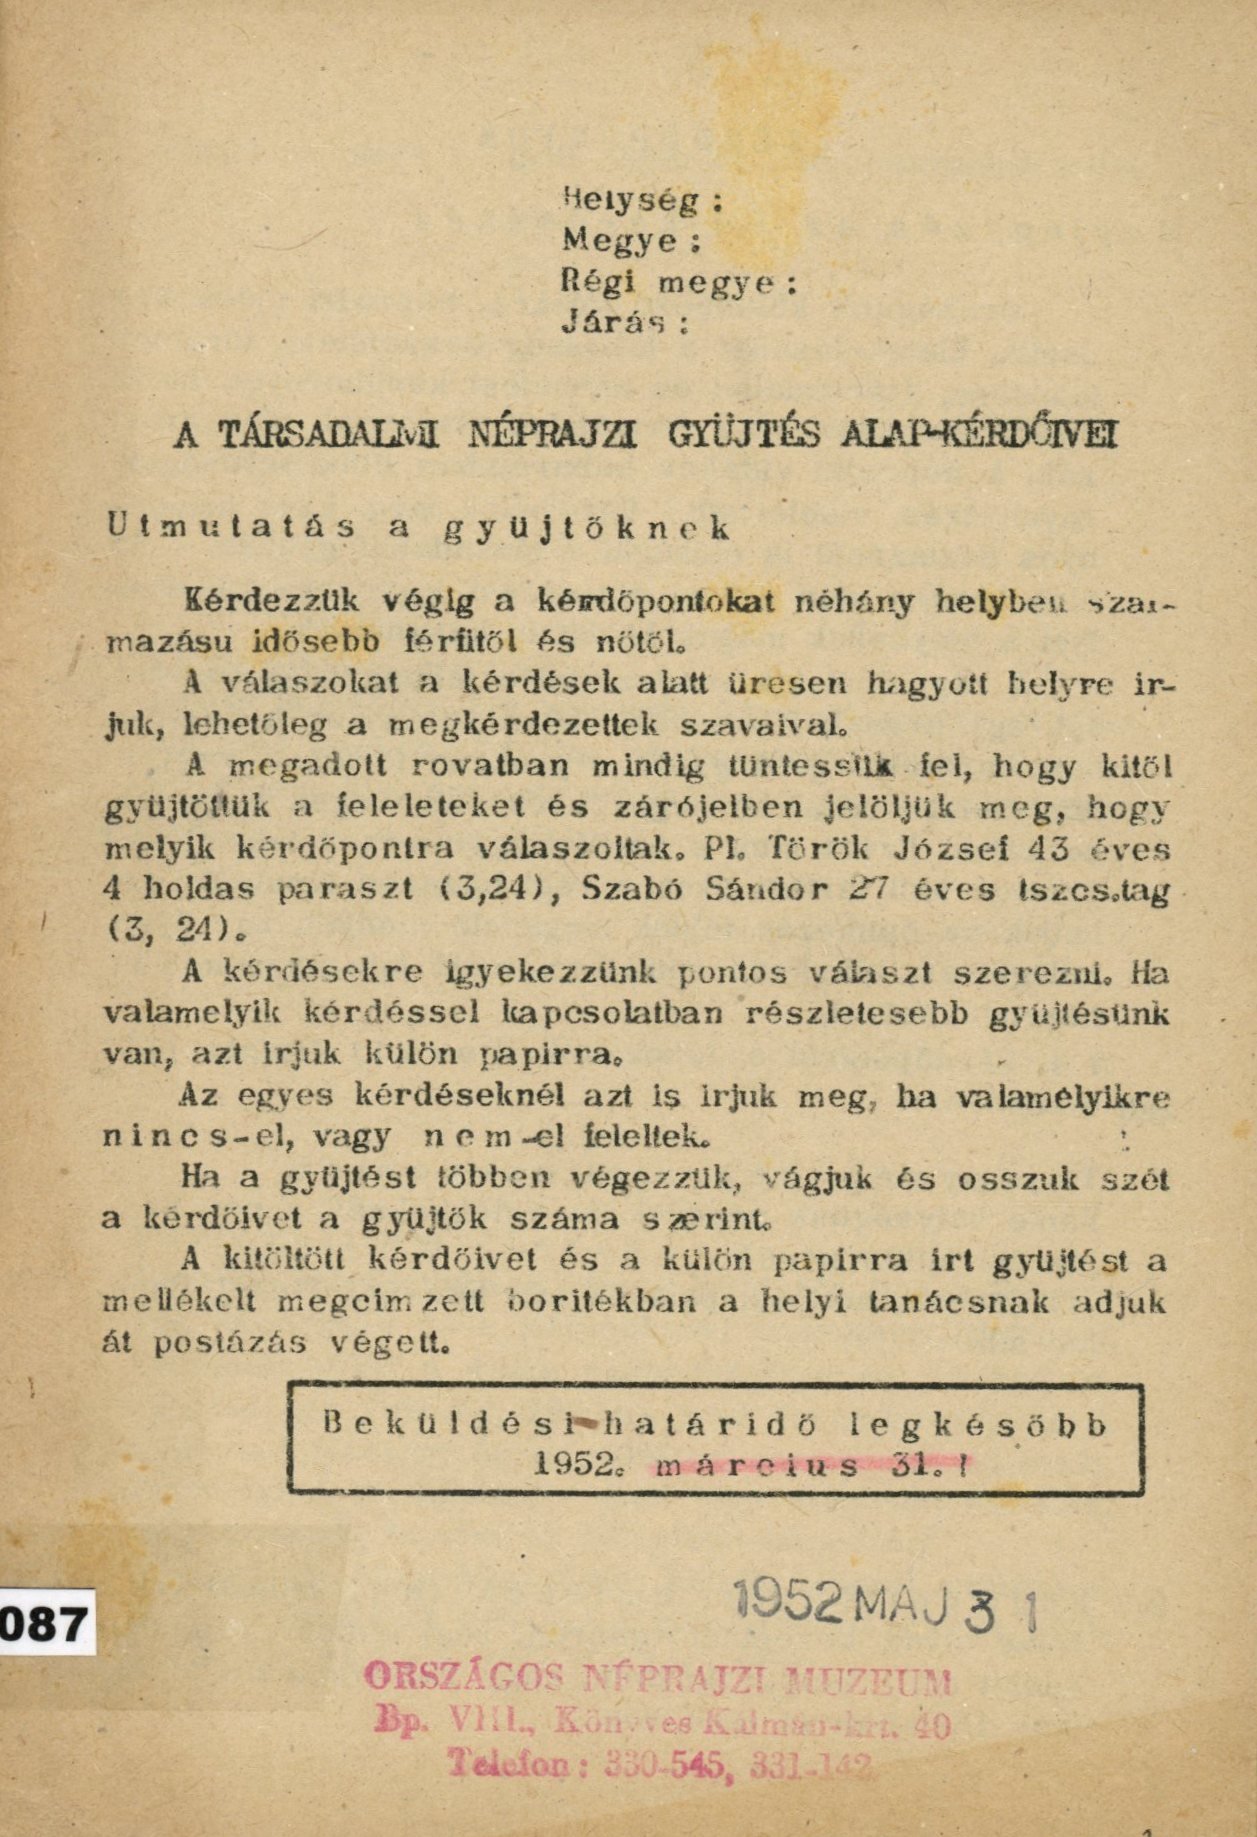 A Társadalmi Néprajzi gyűjtés alap-kérdőívei (Erkel Ferenc Múzeum és Könyvtár, Gyula CC BY-NC-SA)